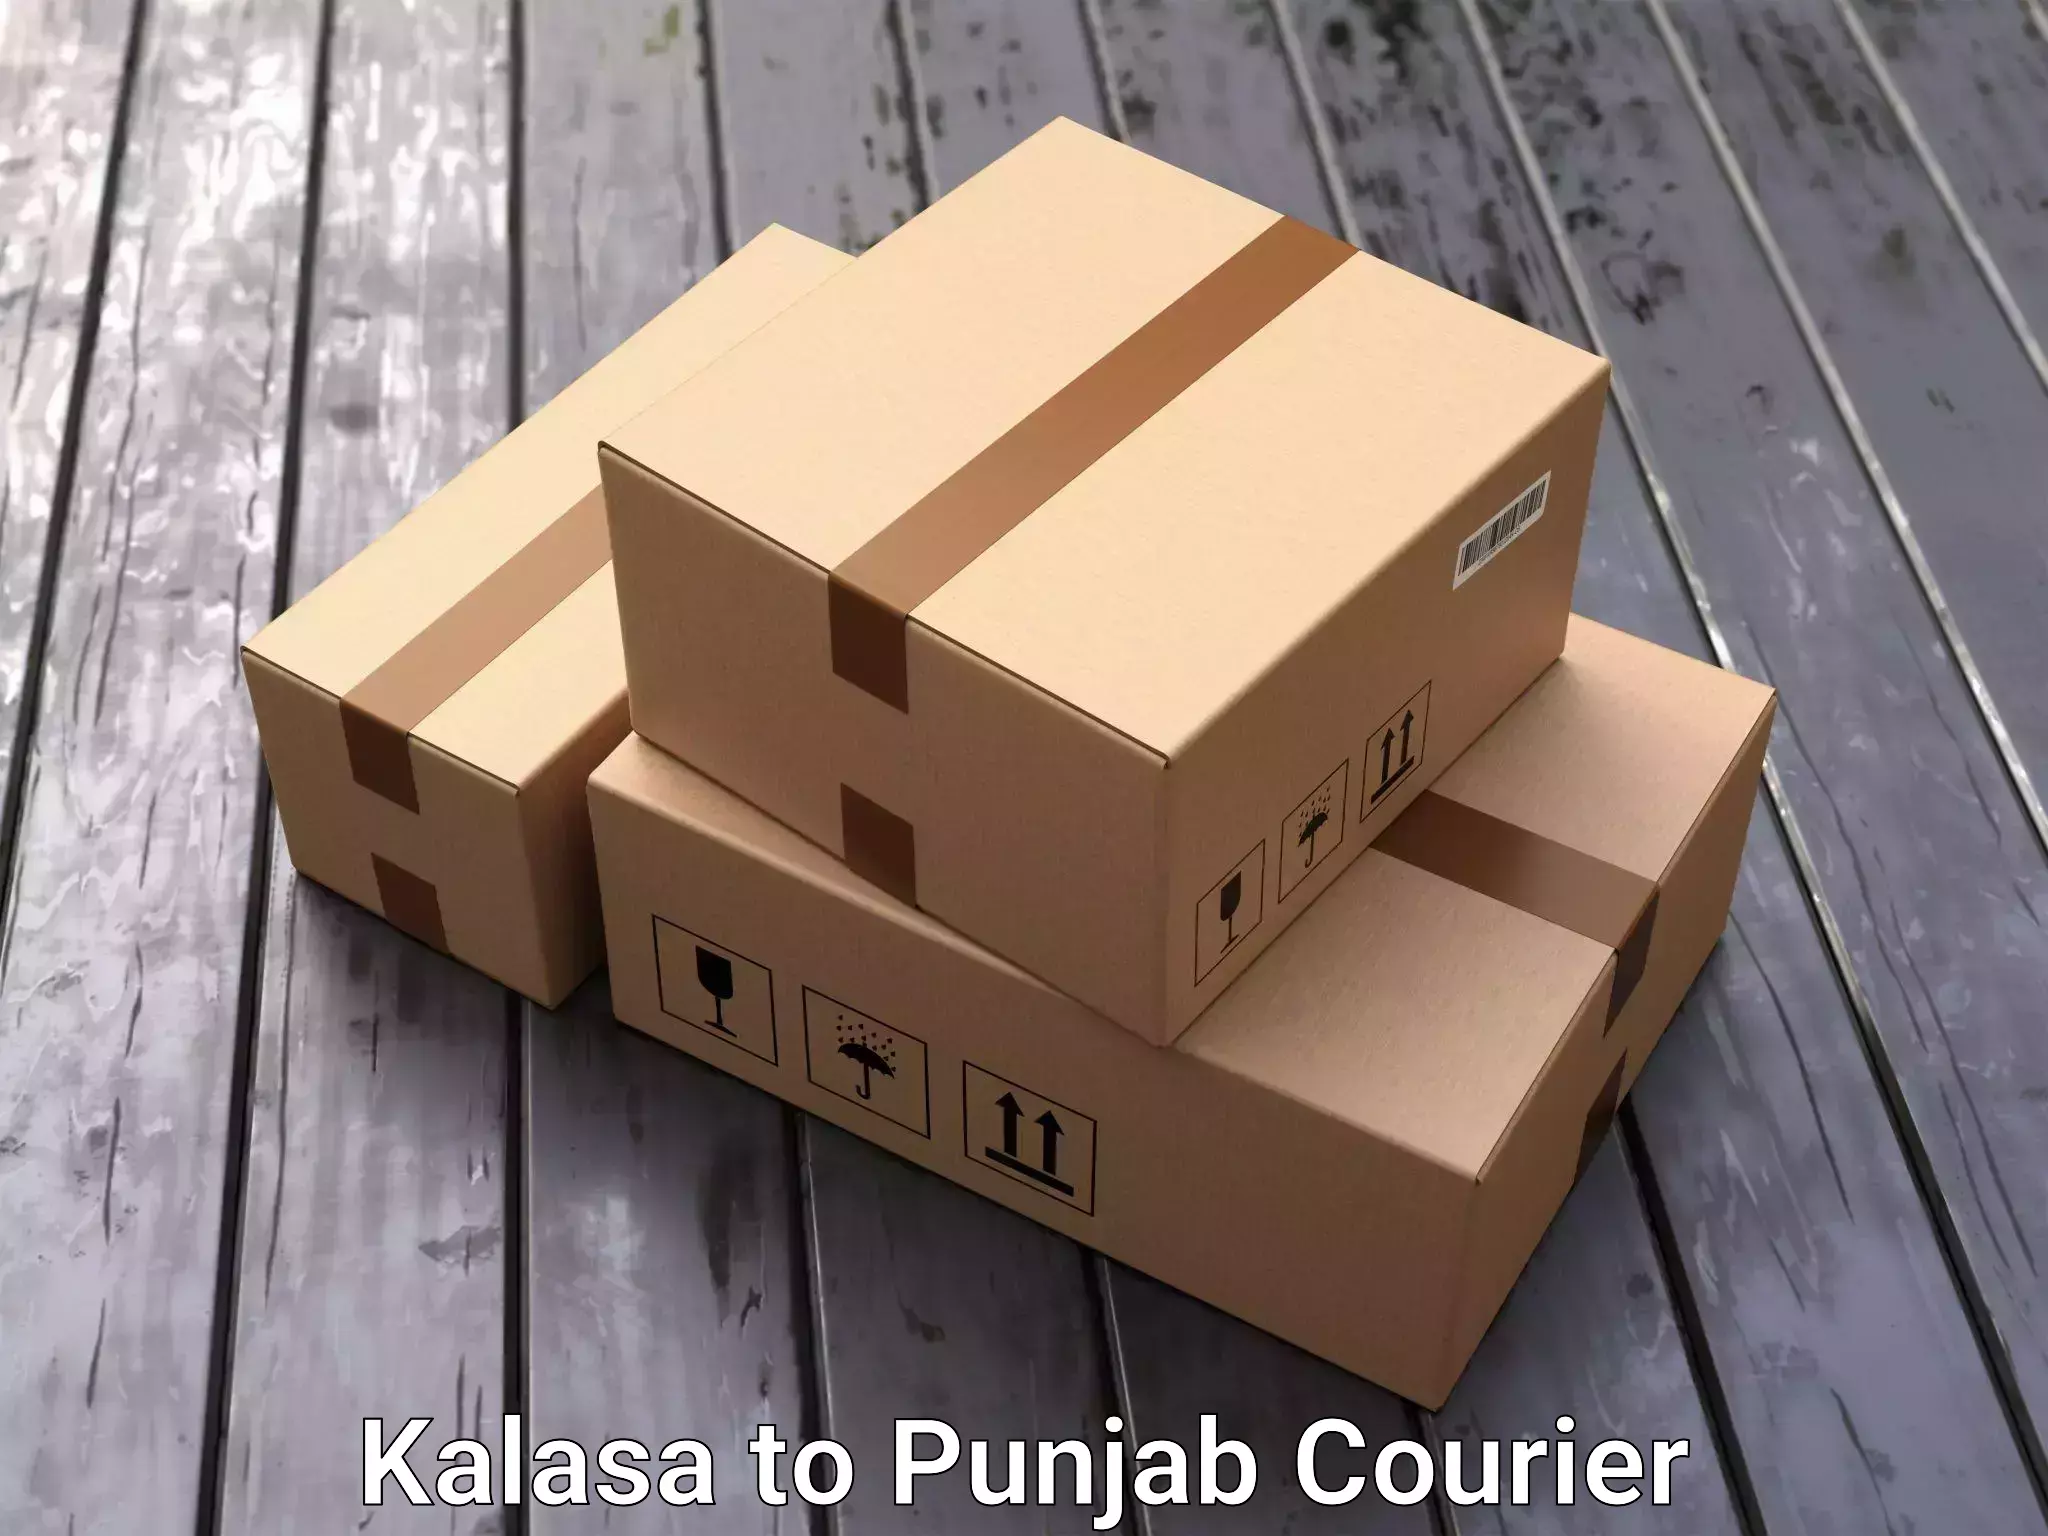 Furniture transport service Kalasa to Amritsar